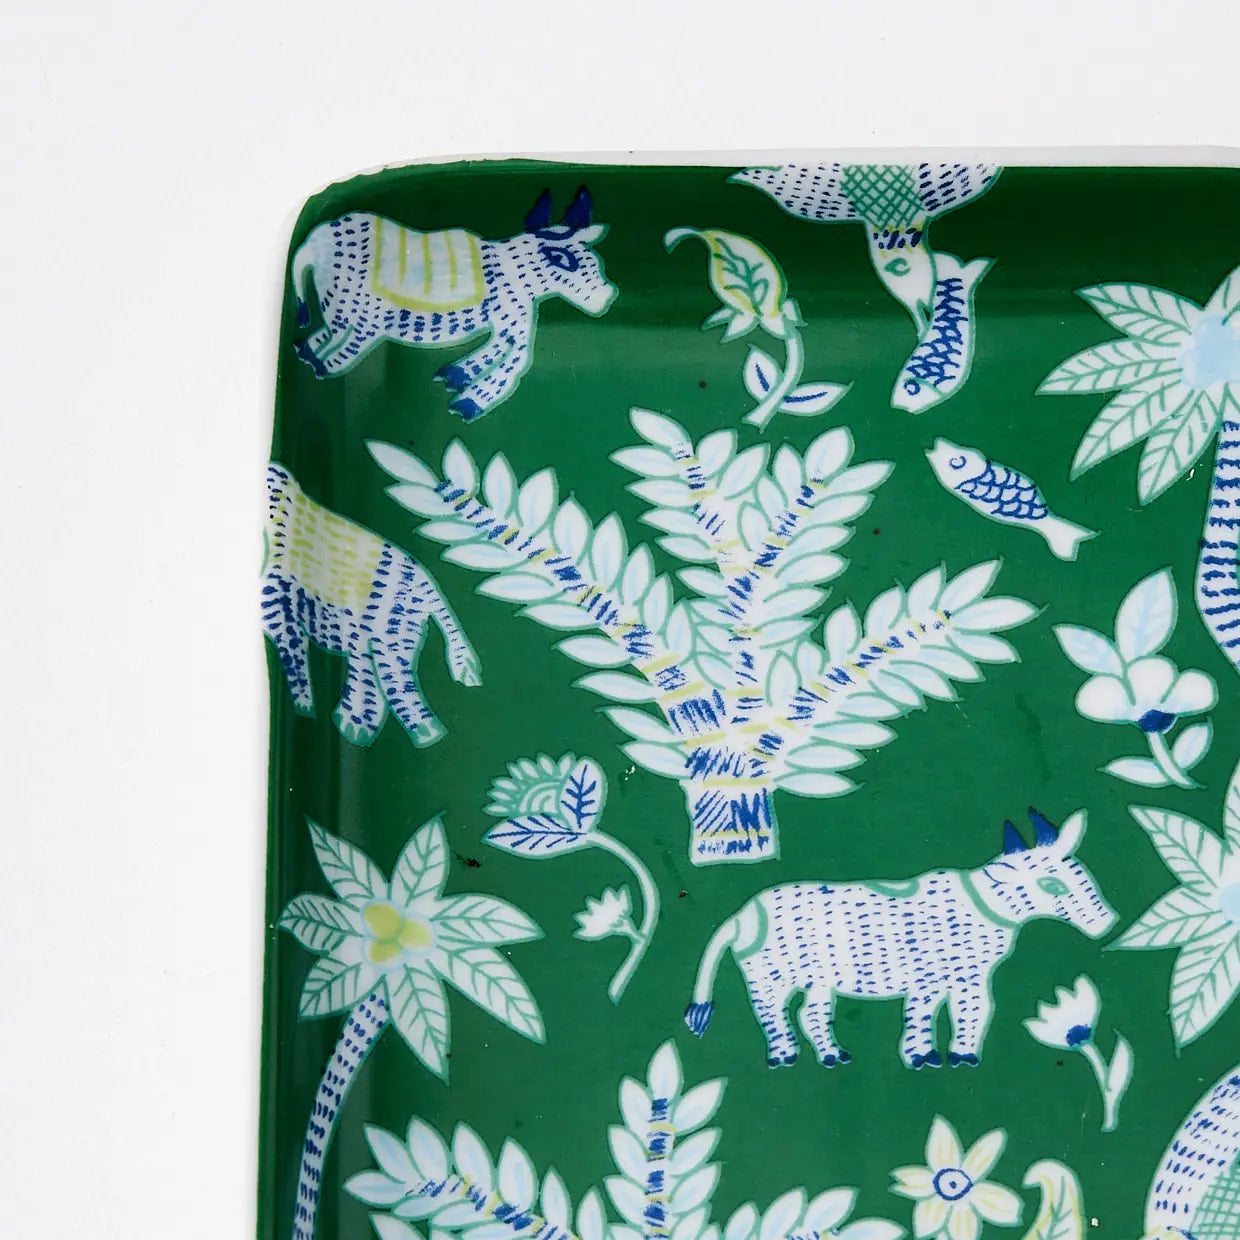 Tropique Ceramic Decorative Tray Green - GigiandTom